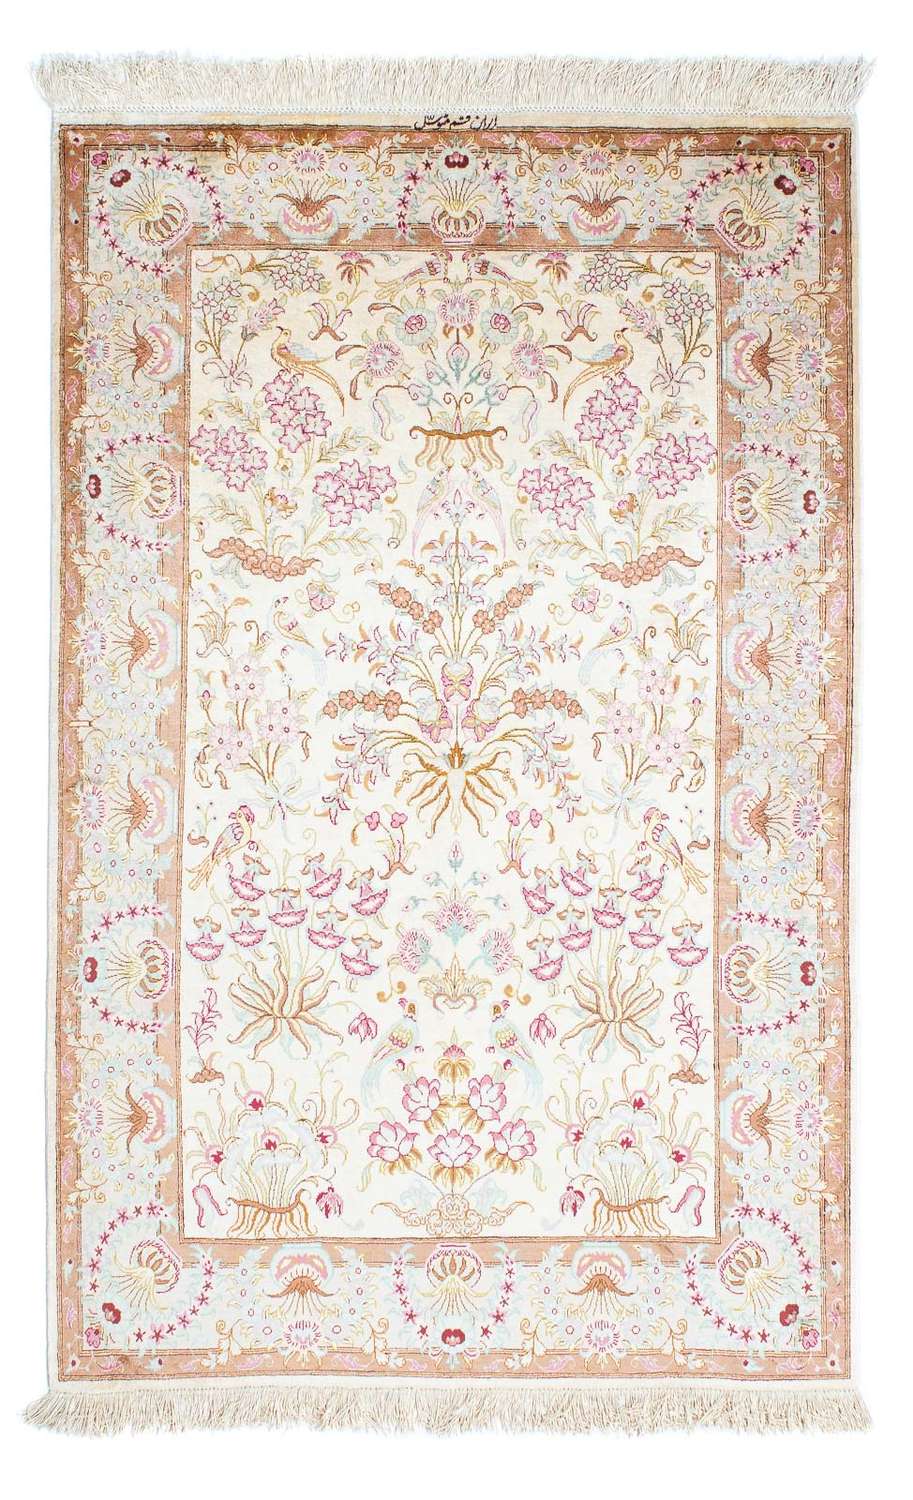 Persisk tæppe - Ghom - 155 x 95 cm - beige